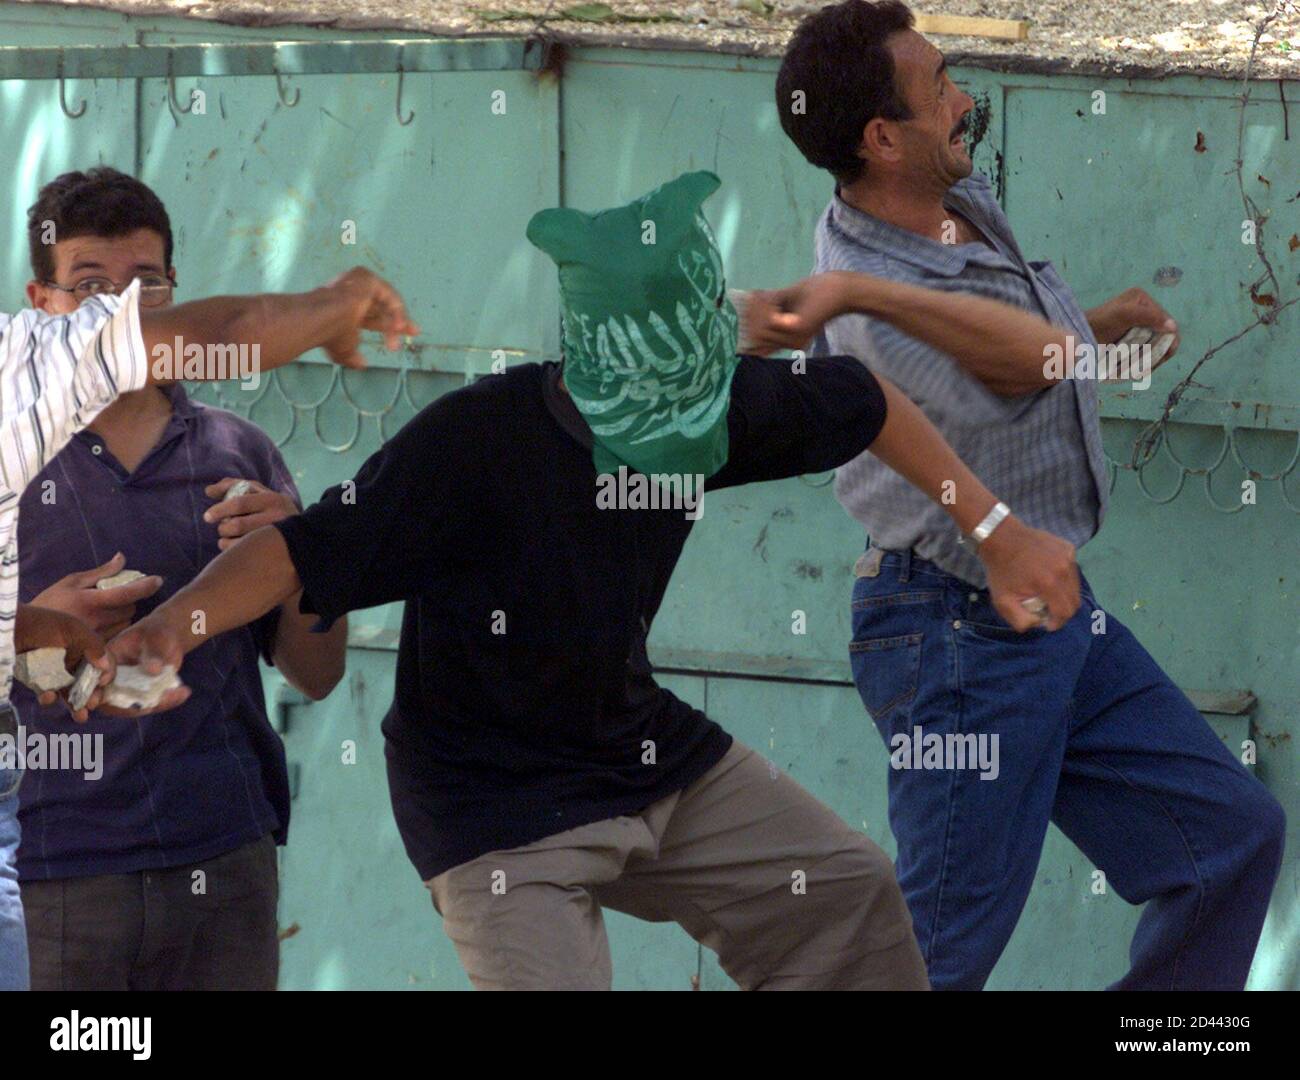 Los palestinos lanzaron piedras contra soldados israelíes durante enfrentamientos en la ciudad de Hebrón, en la Ribera Occidental, el 13 de agosto de 2001. Los palestinos de la Franja de Gaza y la Ribera Occidental cerraron tiendas y oficinas el lunes en protesta contra la toma por parte de Israel de la emblemática sede palestina en Jerusalén. NH/RKR Foto de stock